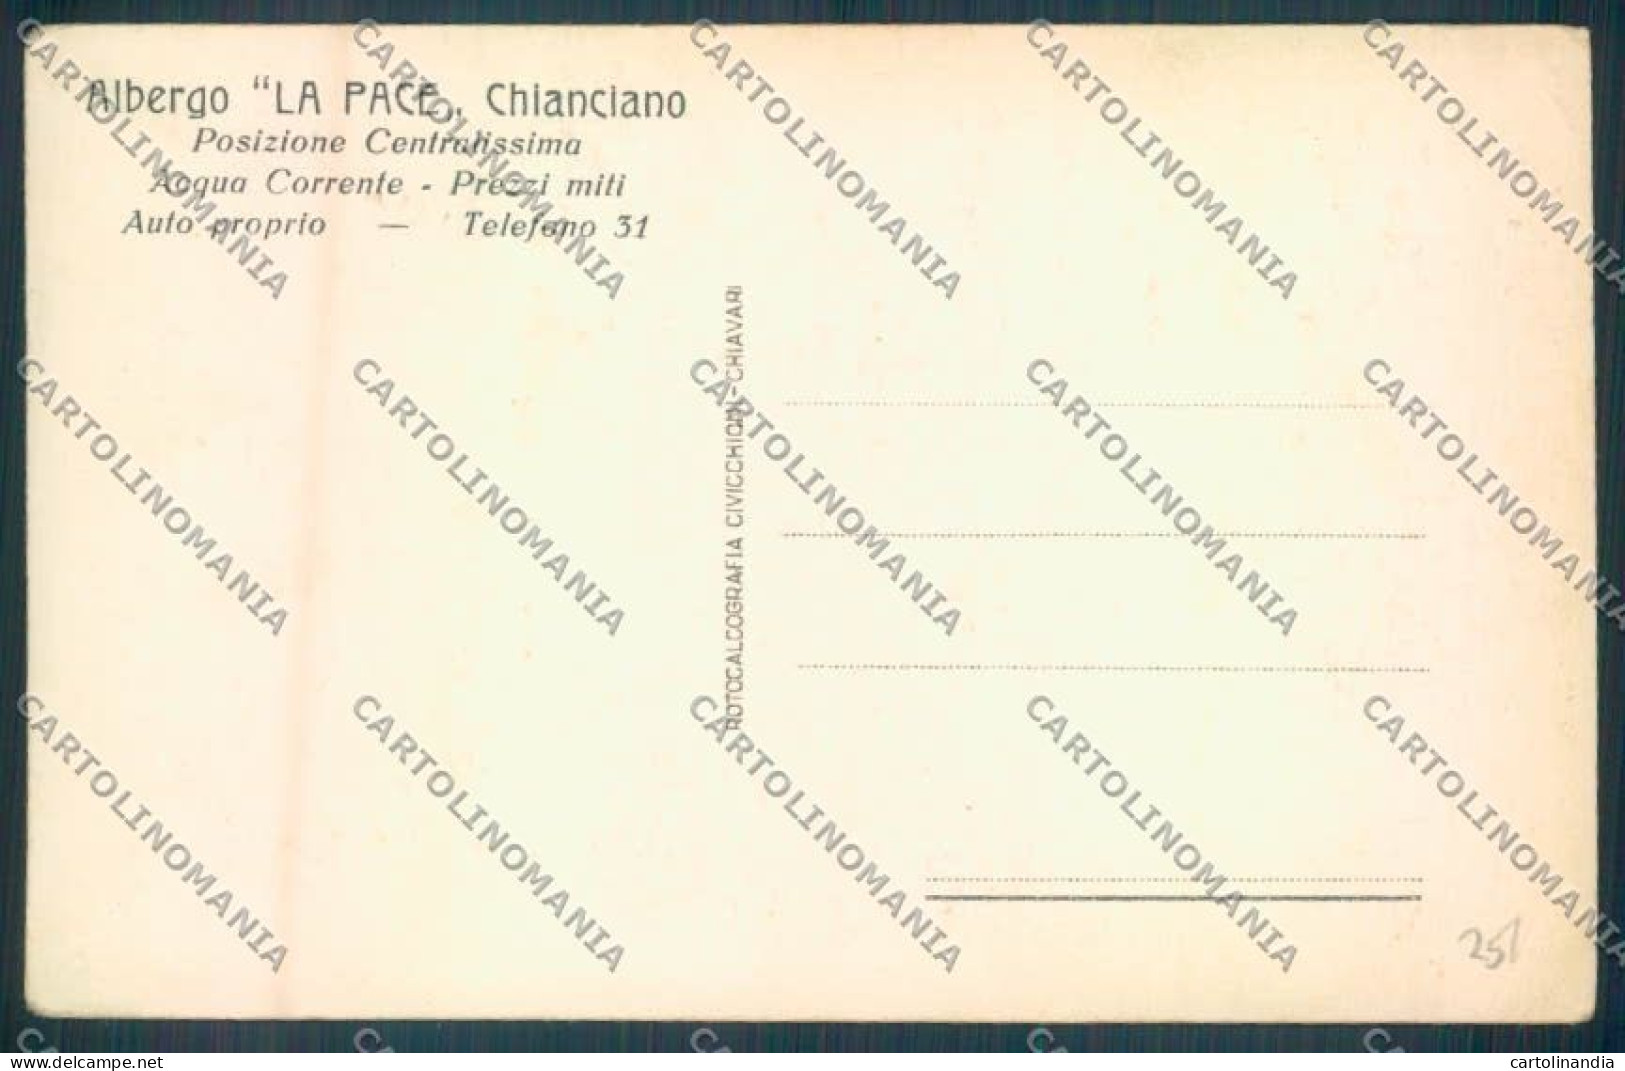 Siena Chianciano Bagni Pubblicitaria Cartolina ZB6323 - Siena